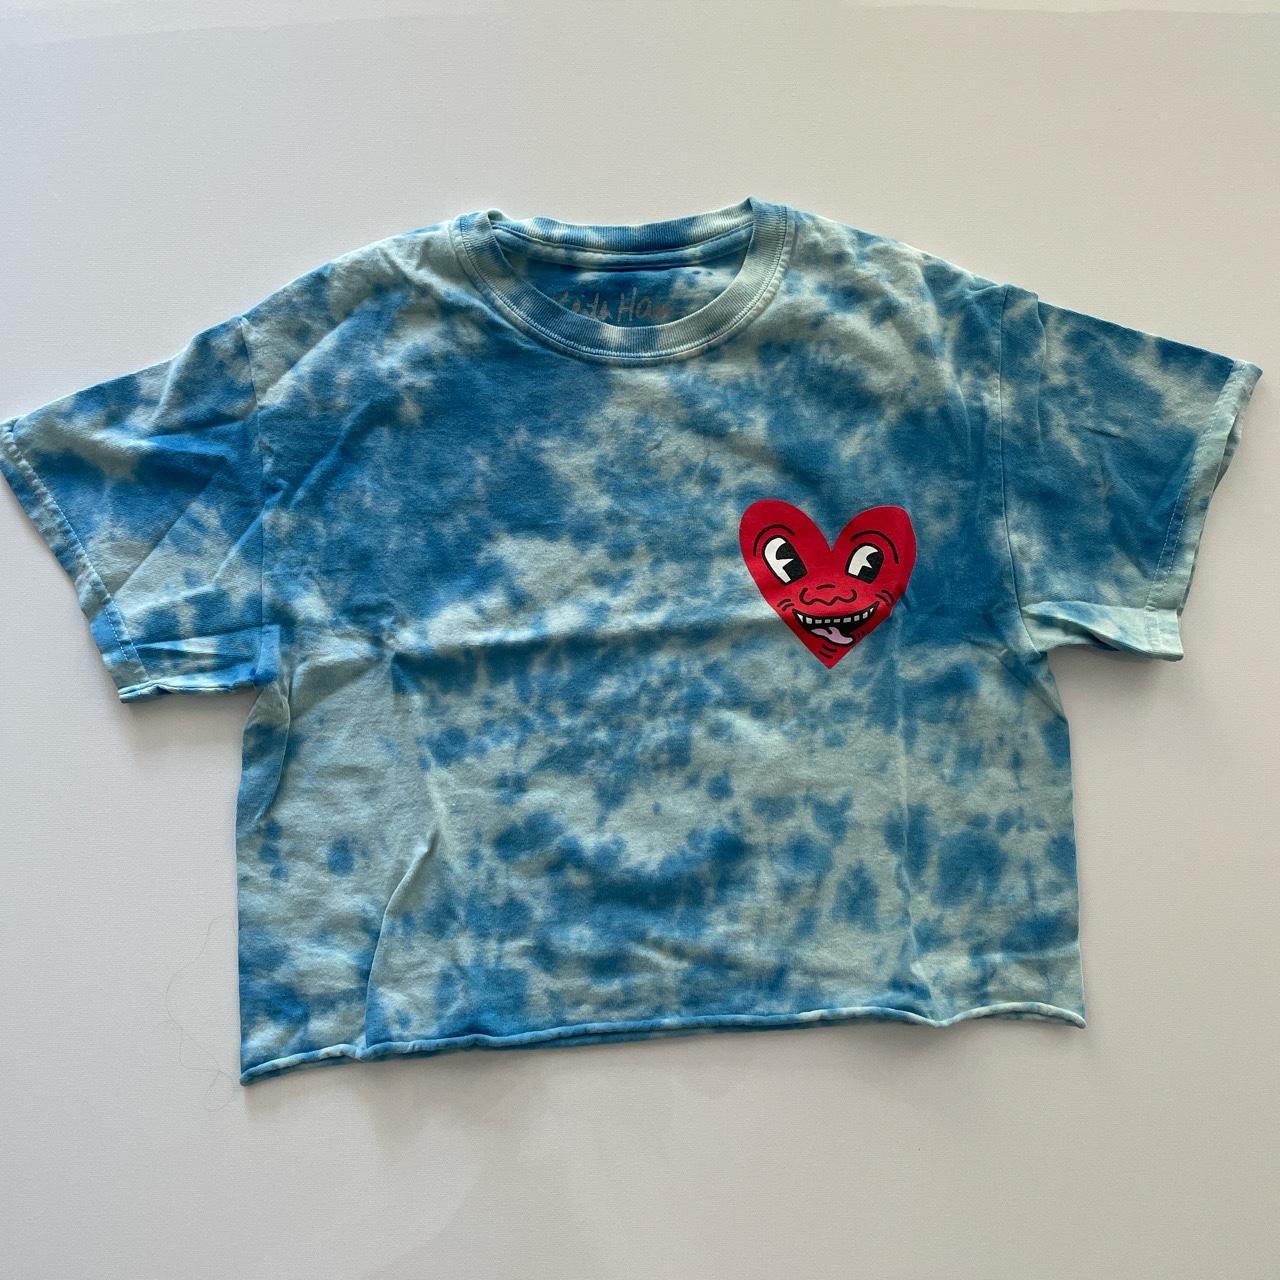 Crop heart t-shirt tie dye - Depop